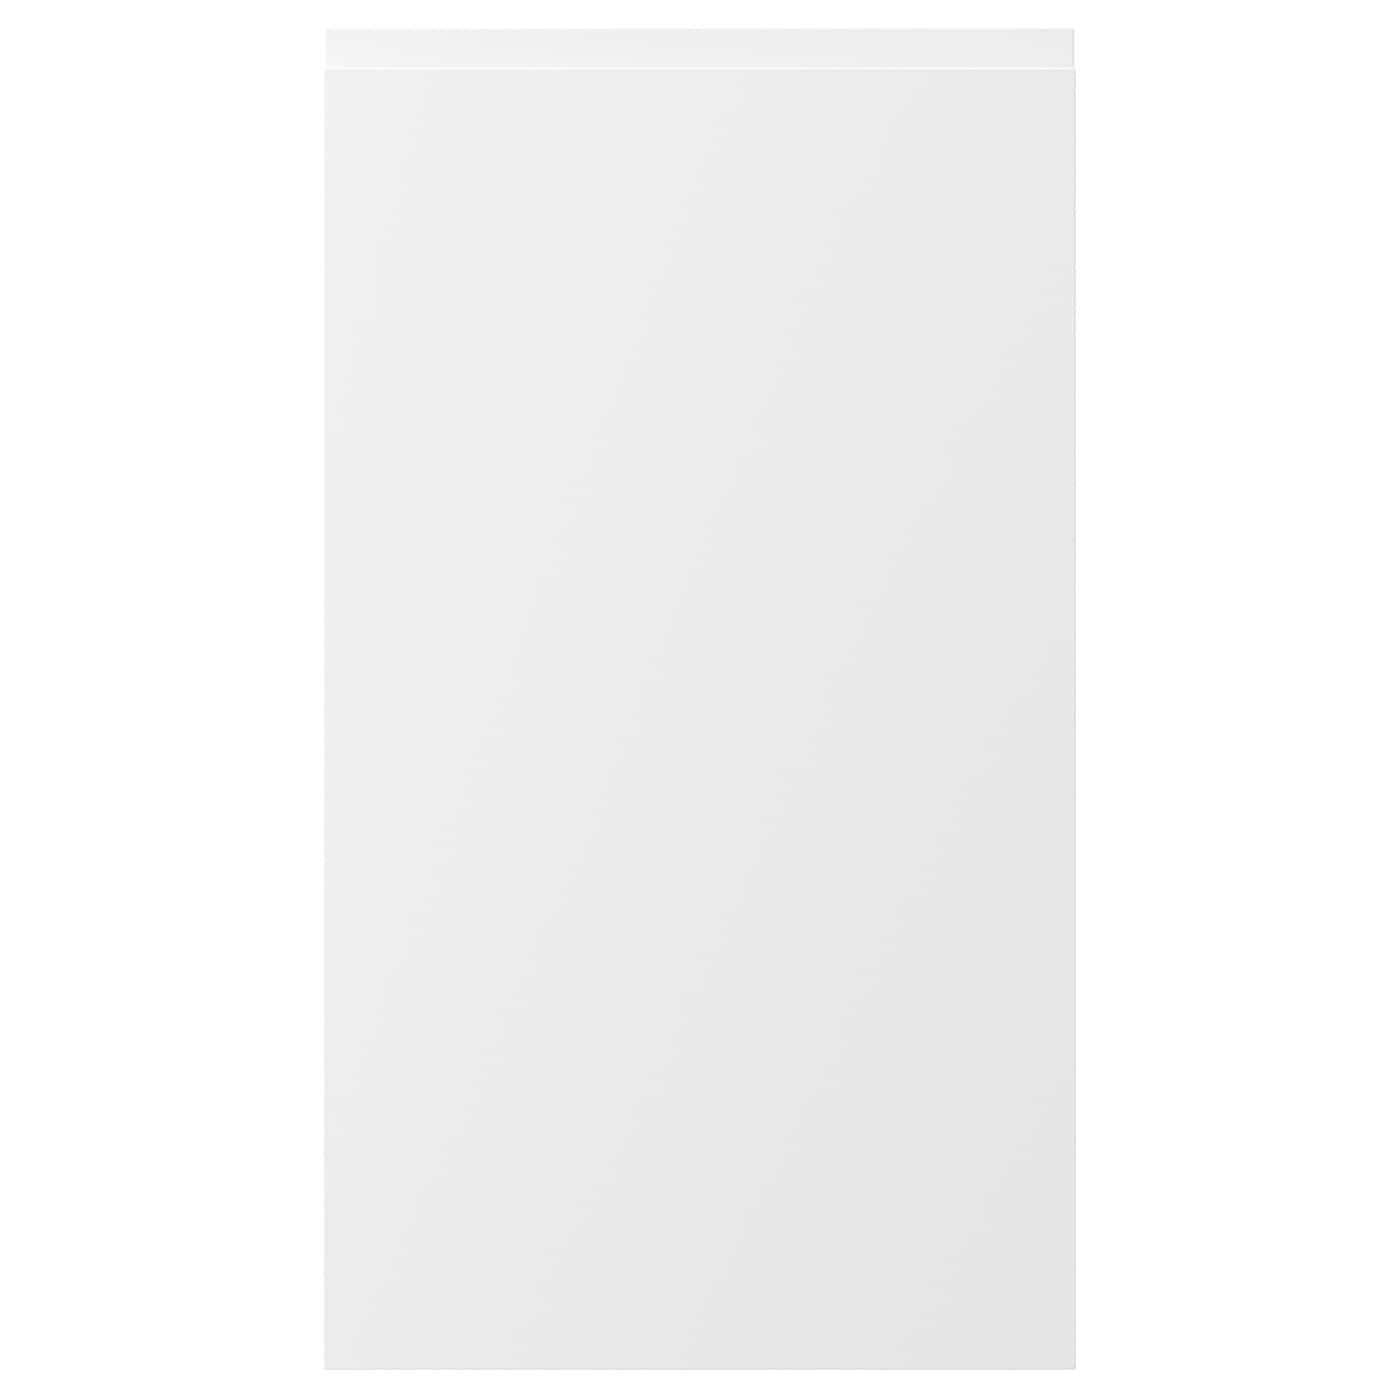 Фасад для посудомоечной машины - IKEA VOXTORP, 80х45 см, матовый белый, ВОКСТОРП ИКЕА